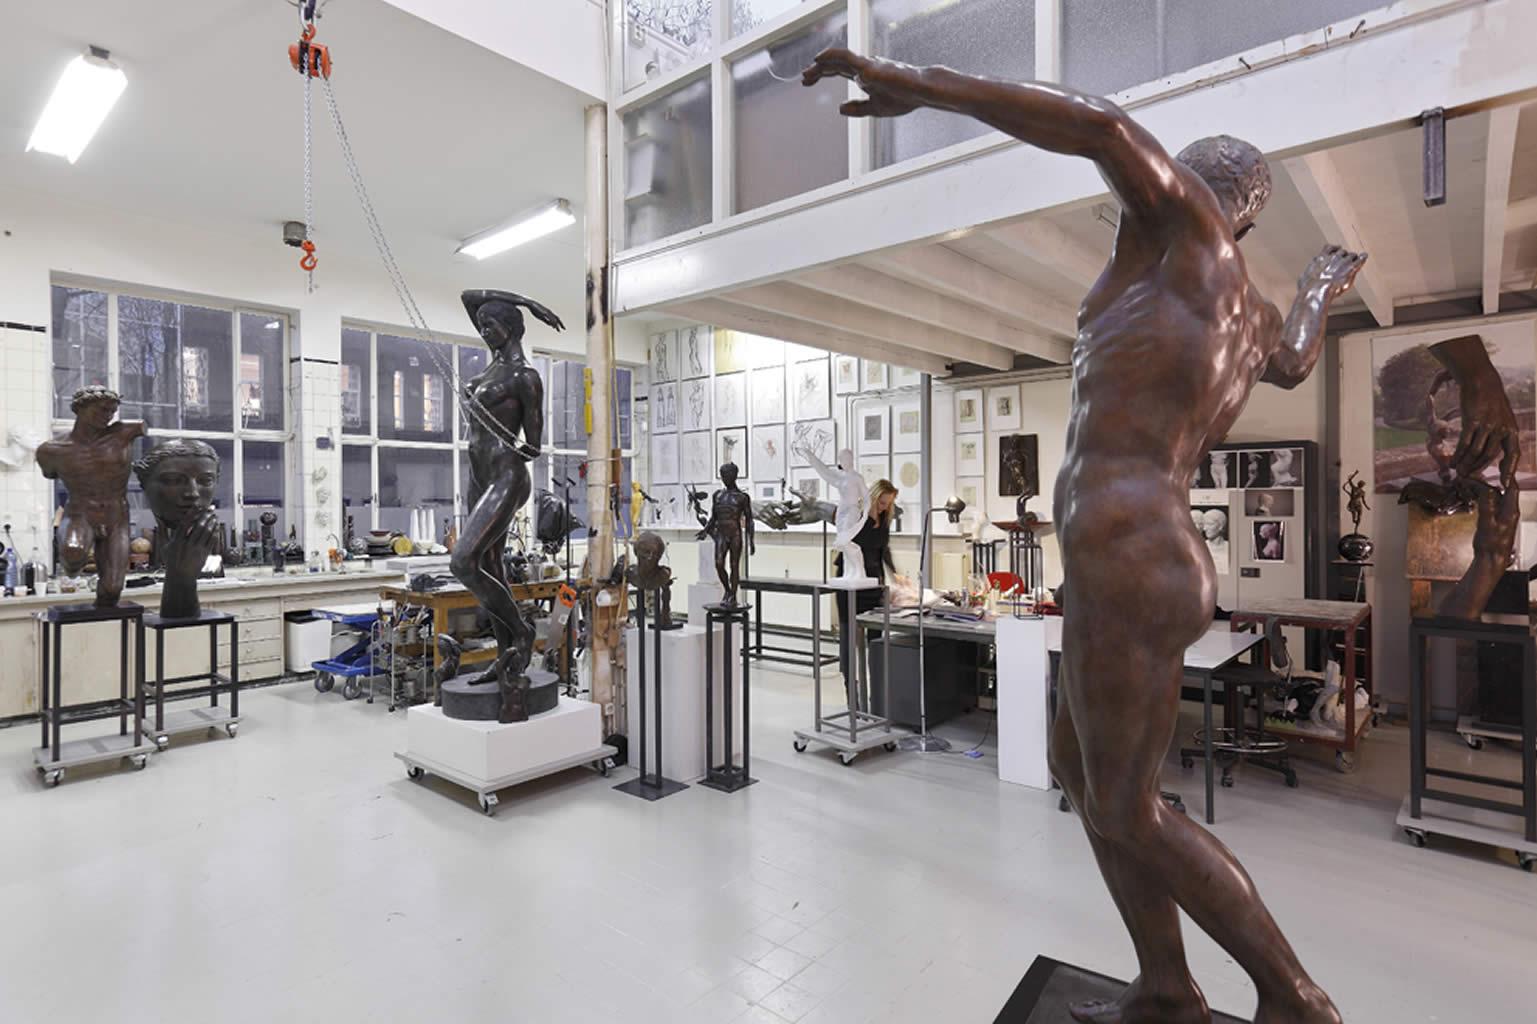 Danse Mystique Dance Mystic Bronzeskulptur Klassische zeitgenössische Skulptur (Zeitgenössisch), Sculpture, von Margot Homan